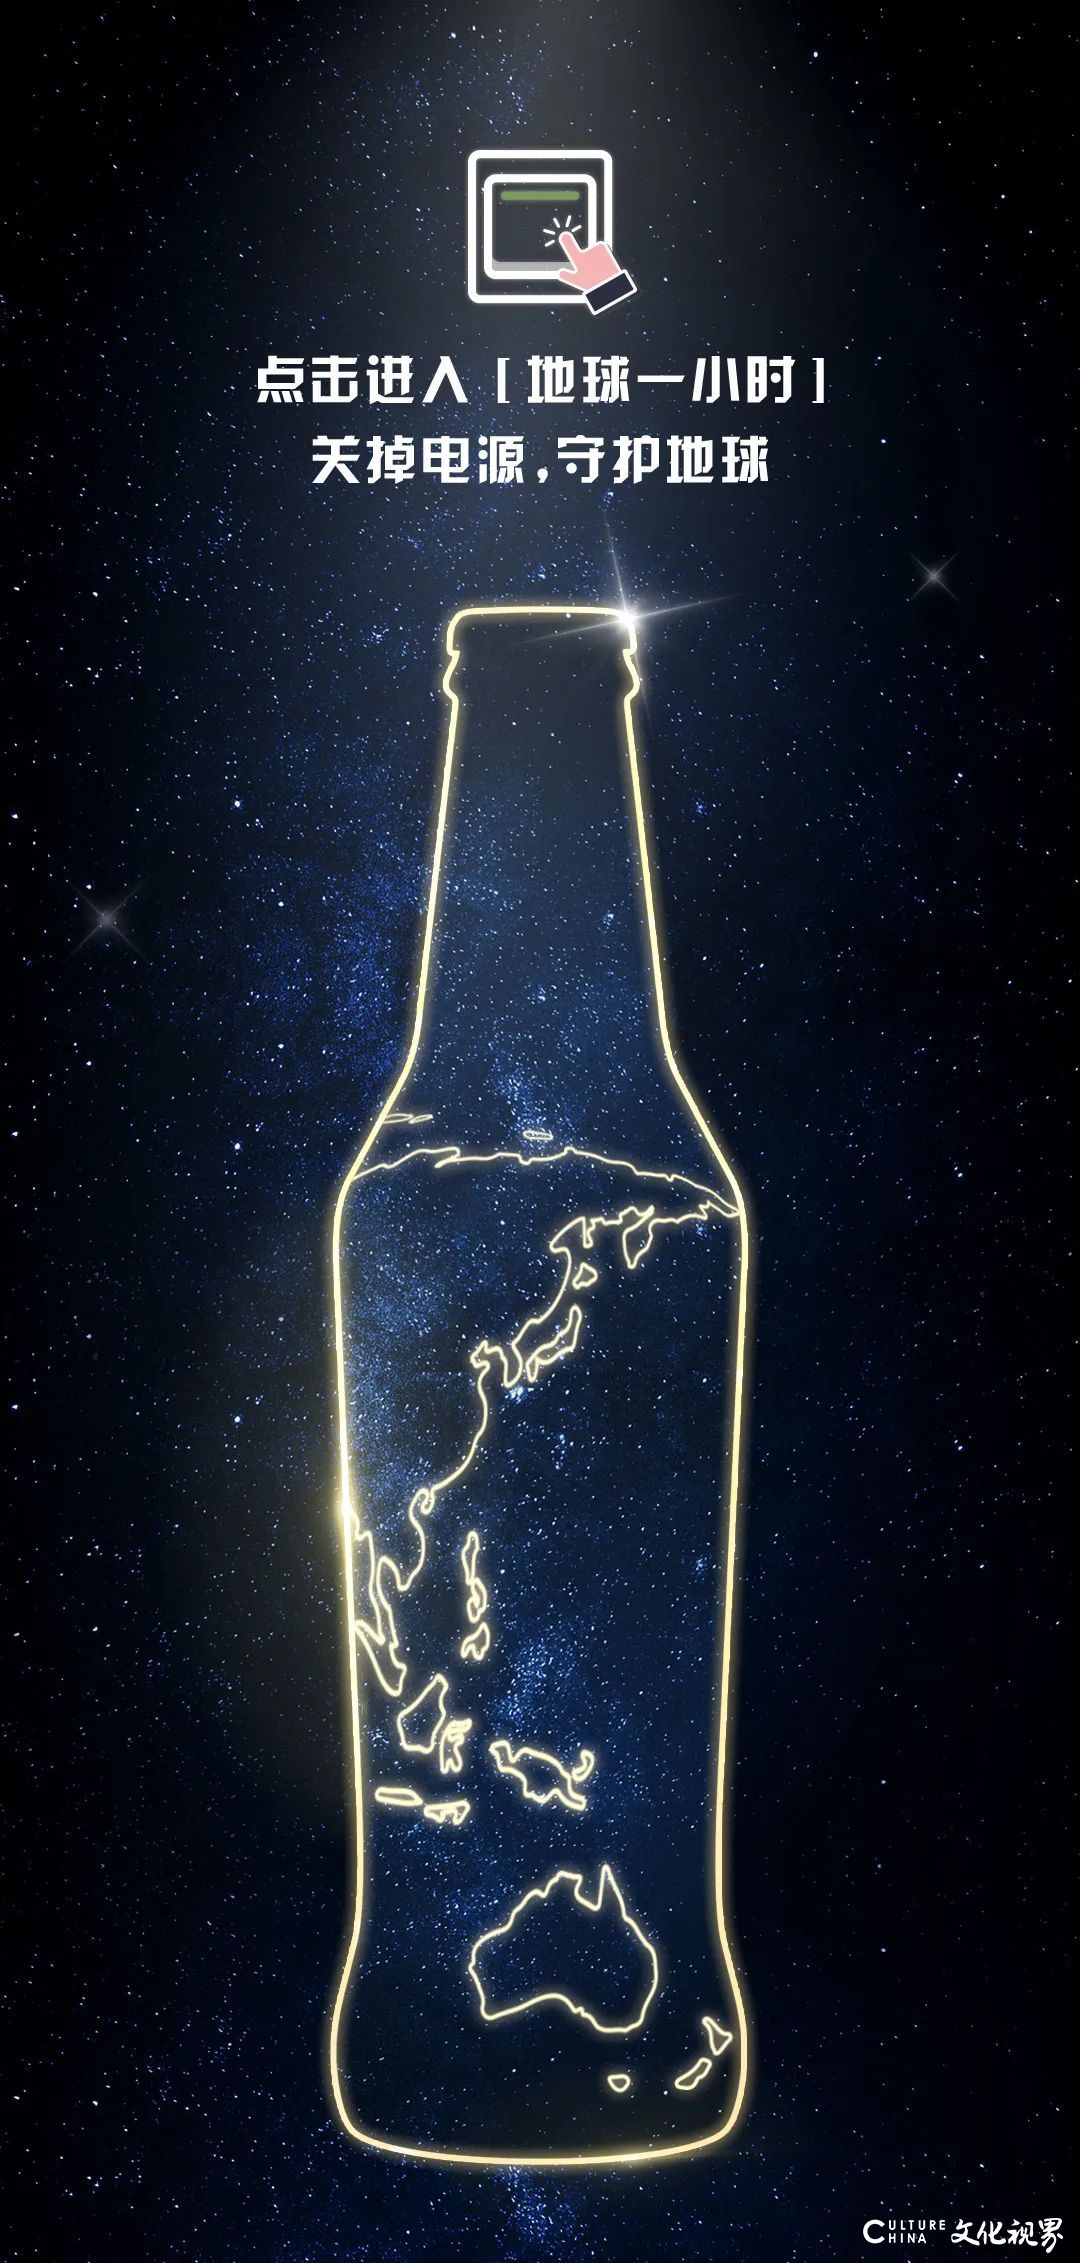 关掉电源 守护地球——世界熄灯日，青岛啤酒开展听清“夜空中最亮的星”环保行动